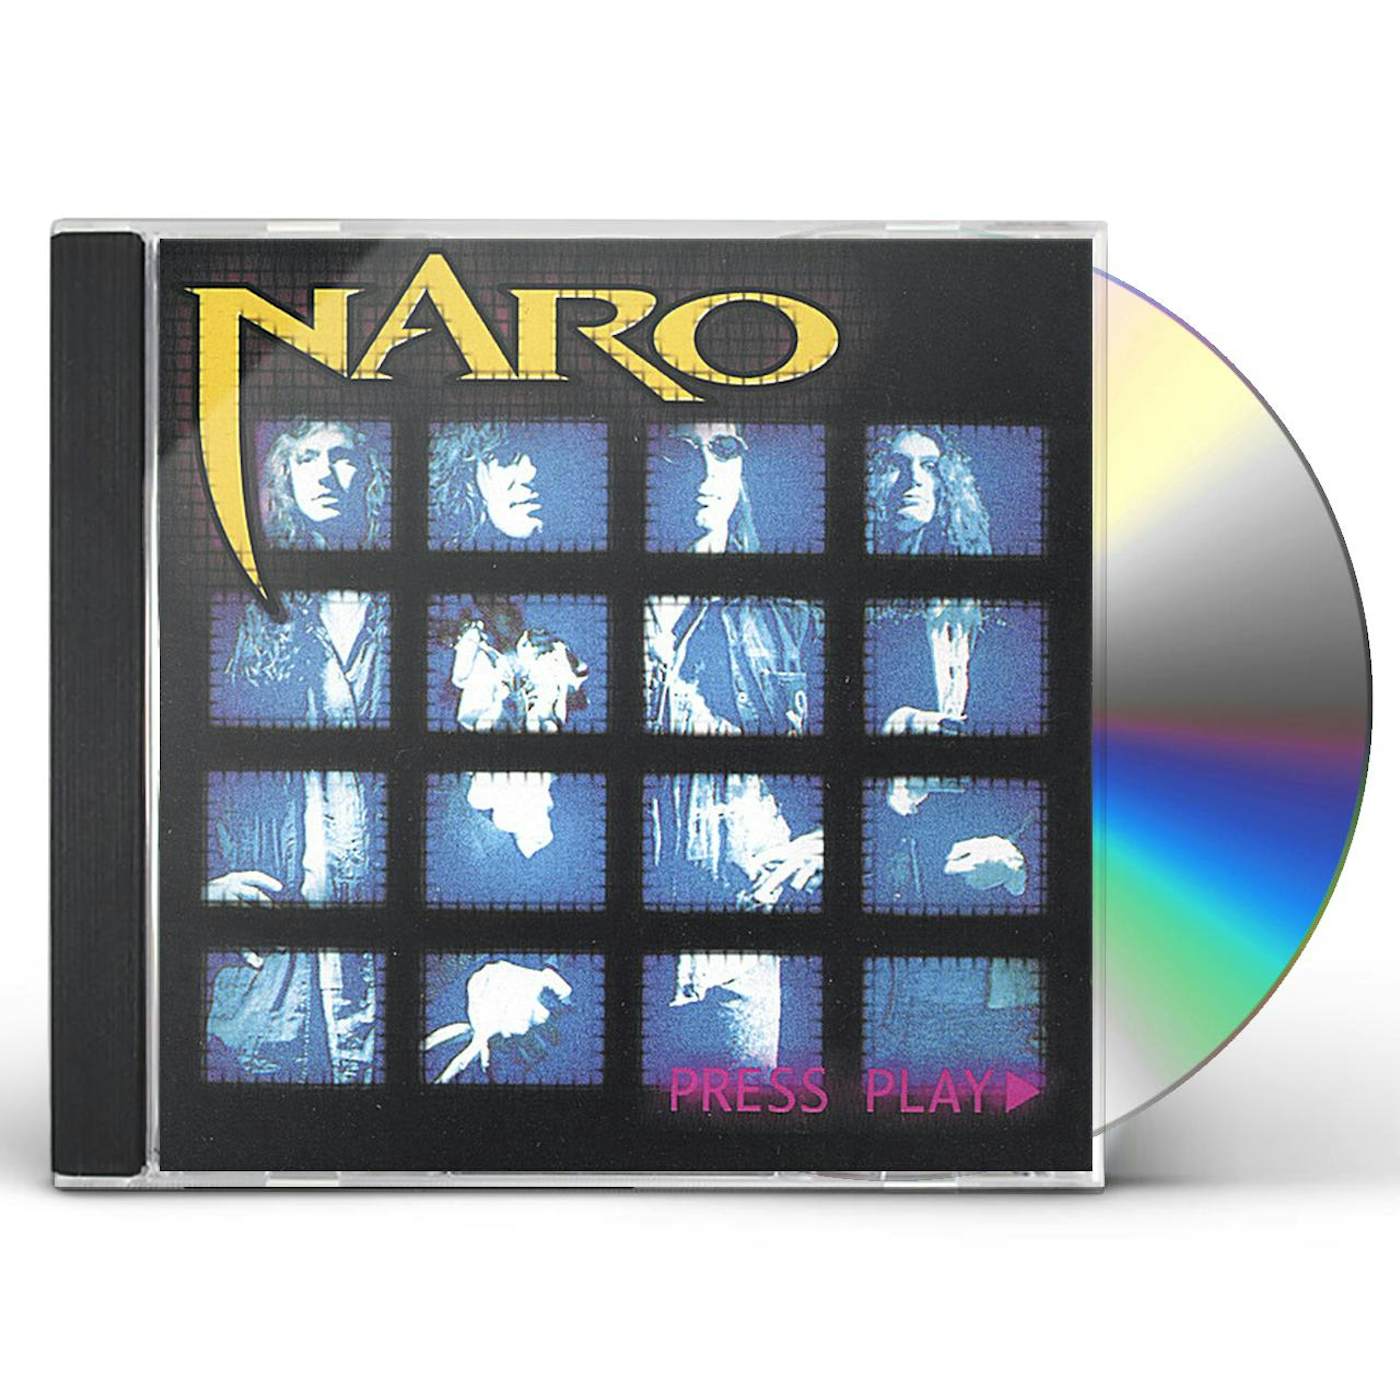 PHil Naro PRESS PLAY CD